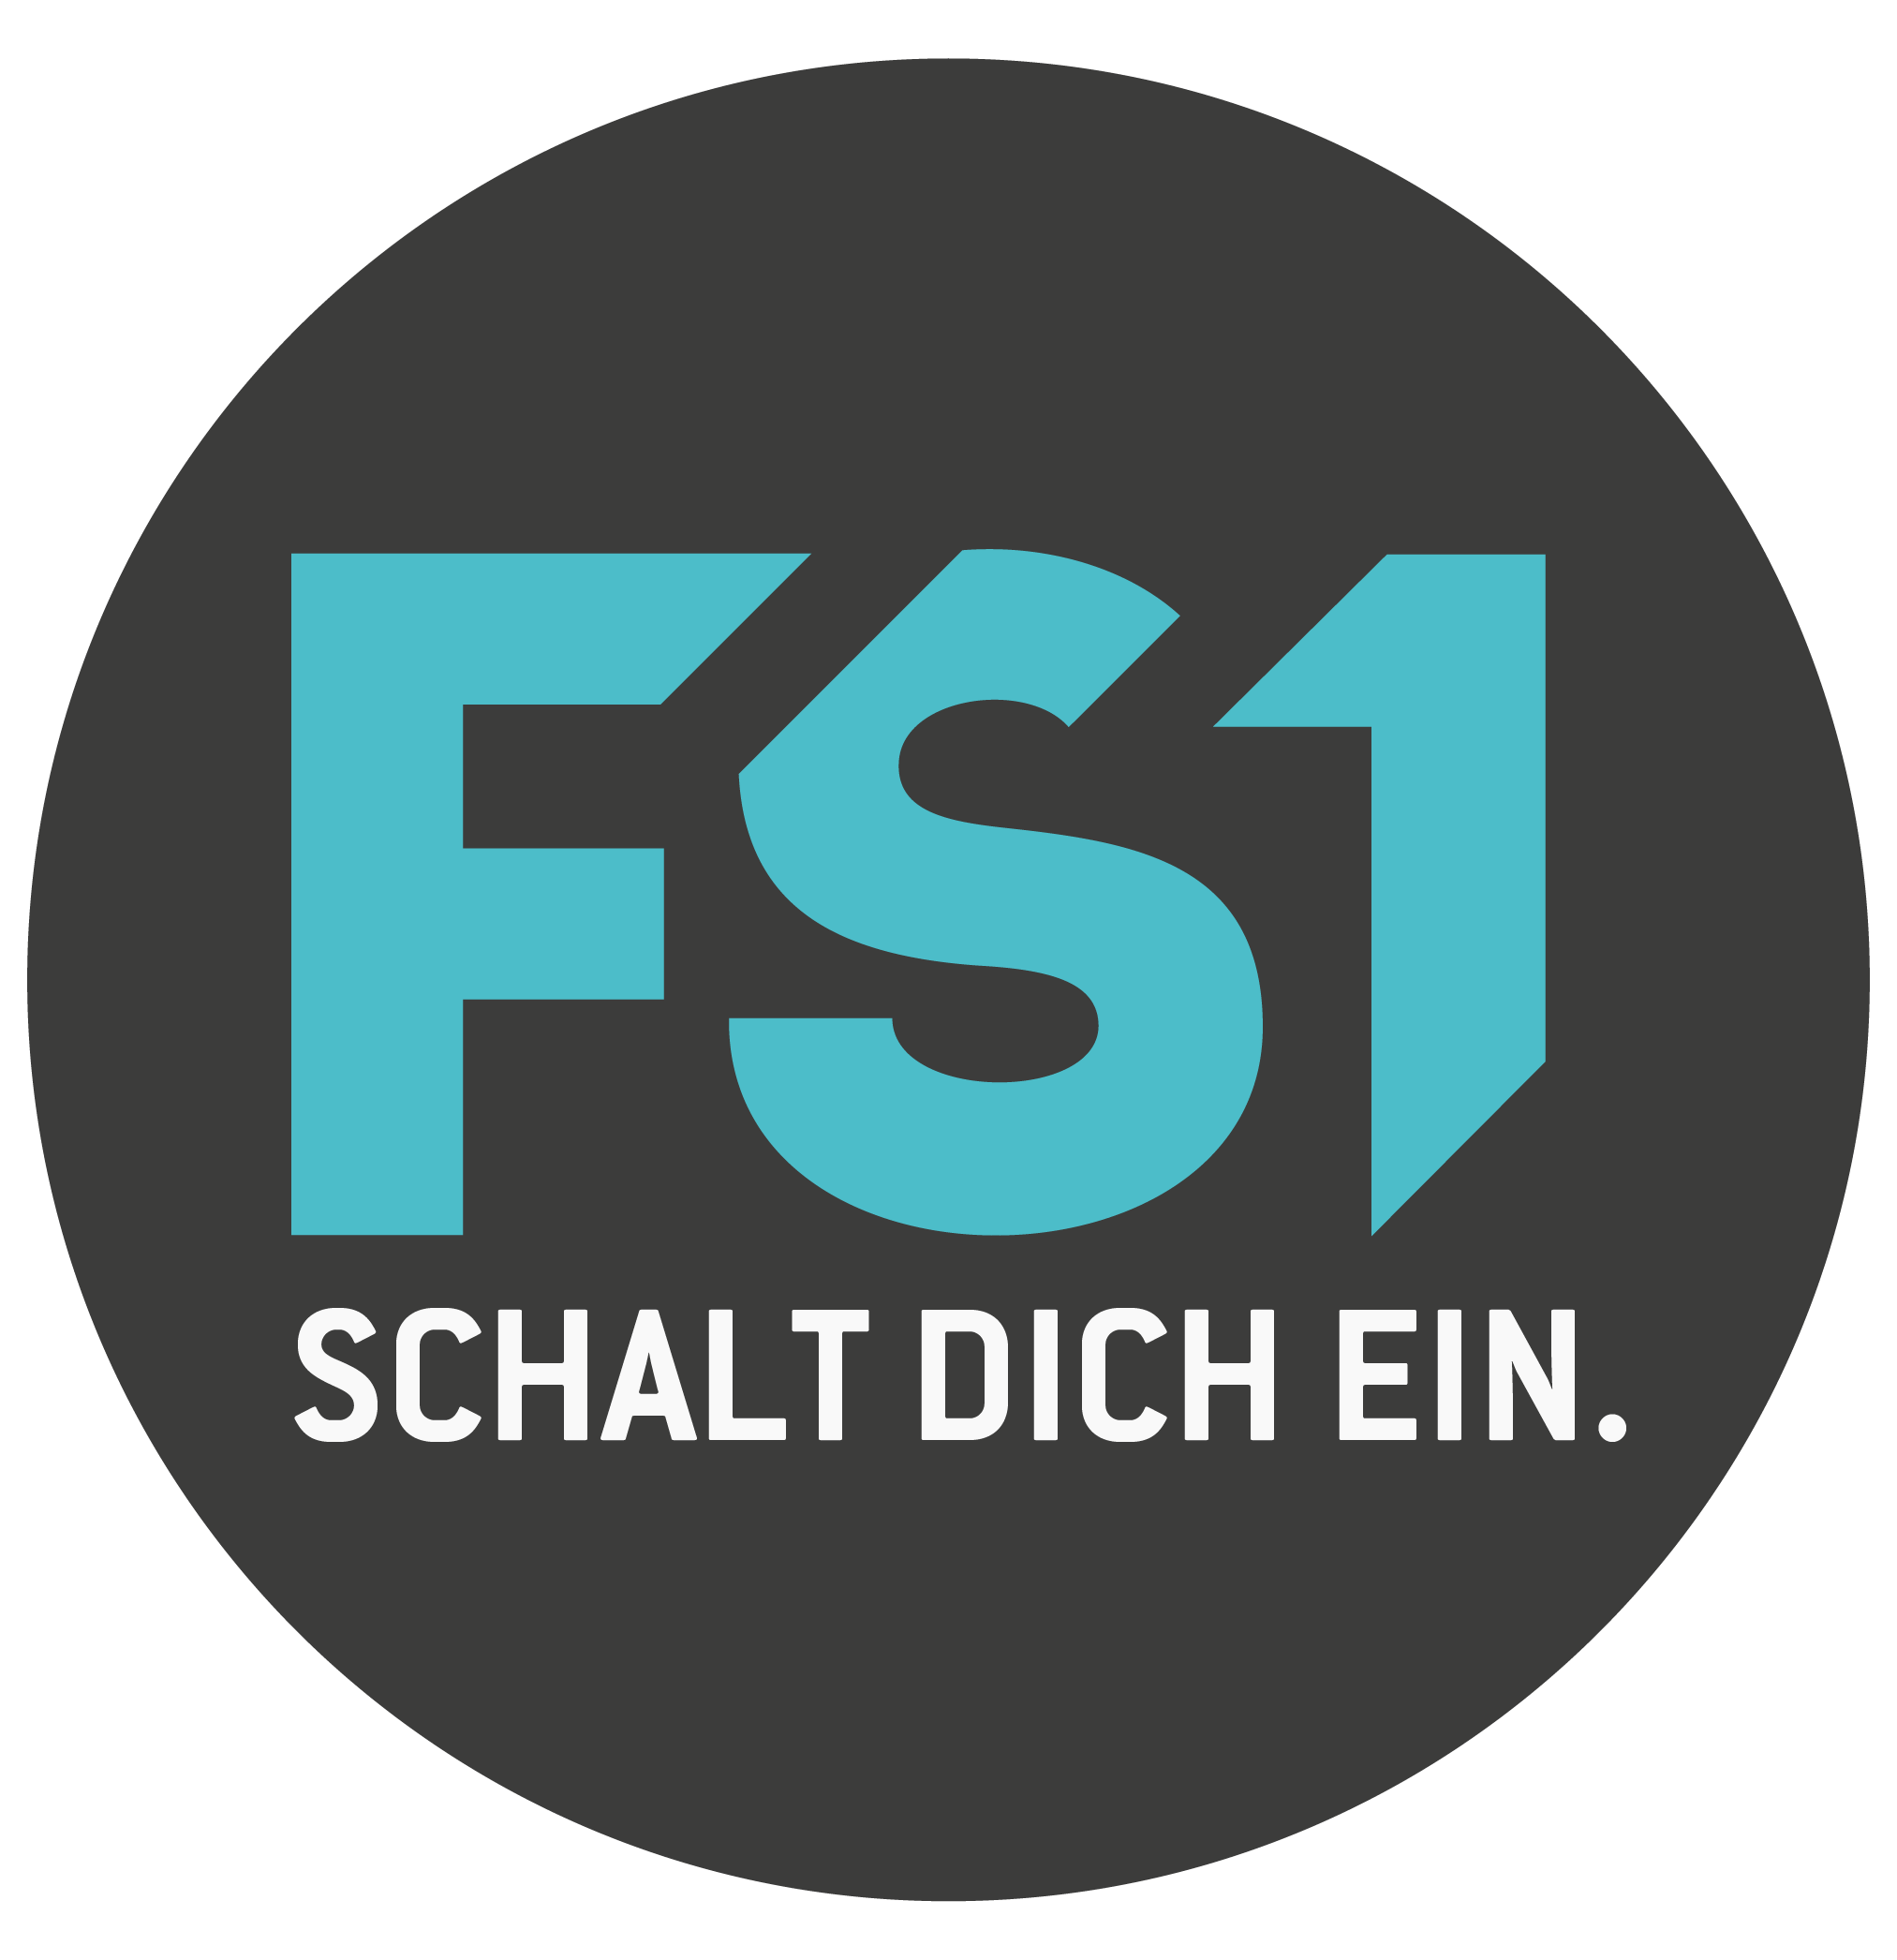 FS1 (Austrian TV channel)